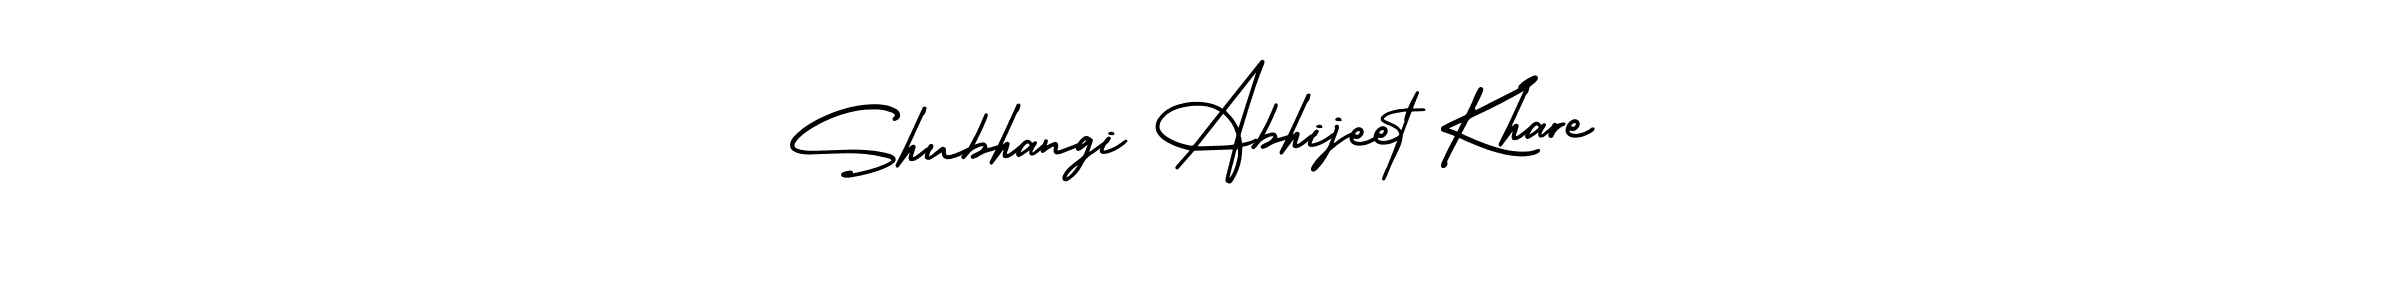 Shubhangi Abhijeet Khare stylish signature style. Best Handwritten Sign (AmerikaSignatureDemo-Regular) for my name. Handwritten Signature Collection Ideas for my name Shubhangi Abhijeet Khare. Shubhangi Abhijeet Khare signature style 3 images and pictures png